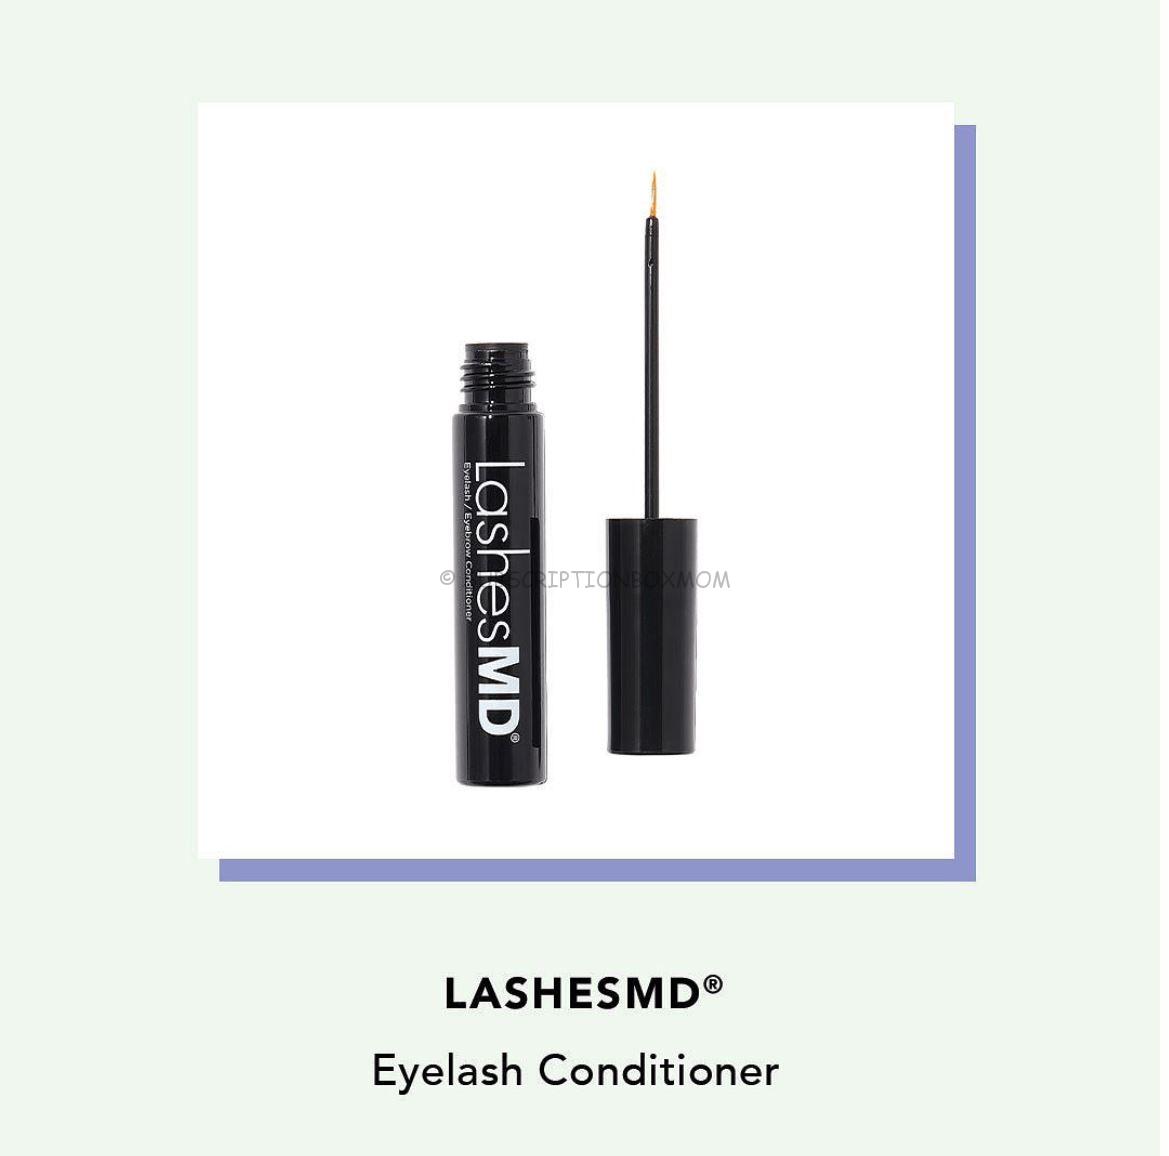 LASHESMD Eyelash Conditioner